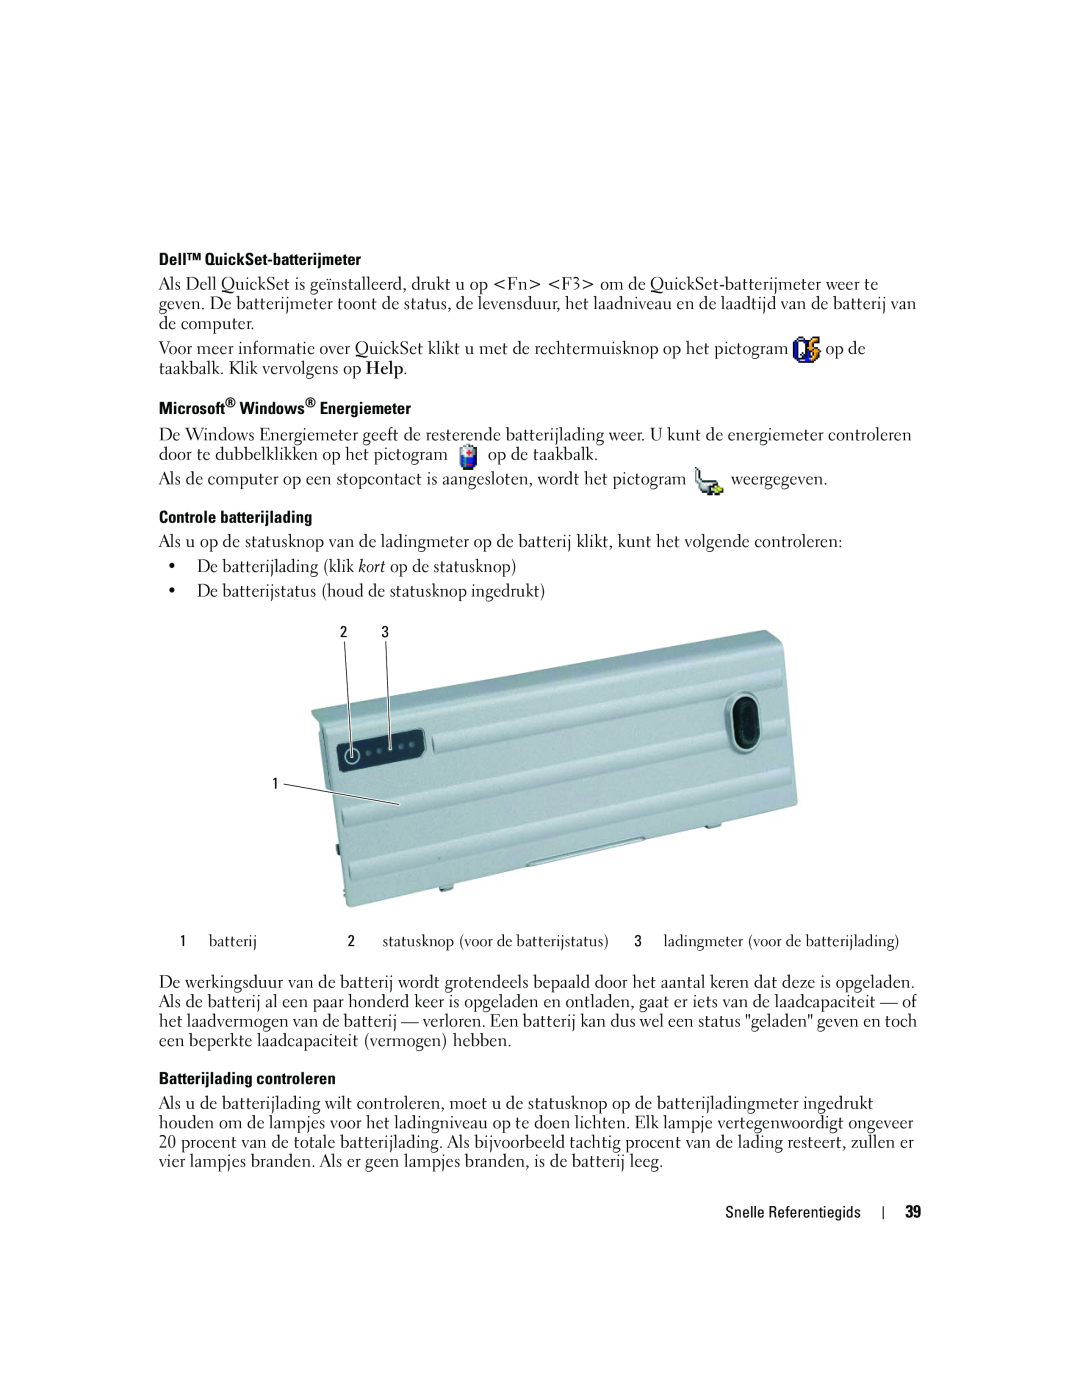 Dell ATG D620 manual Dell QuickSet-batterijmeter, Microsoft Windows Energiemeter, Controle batterijlading 